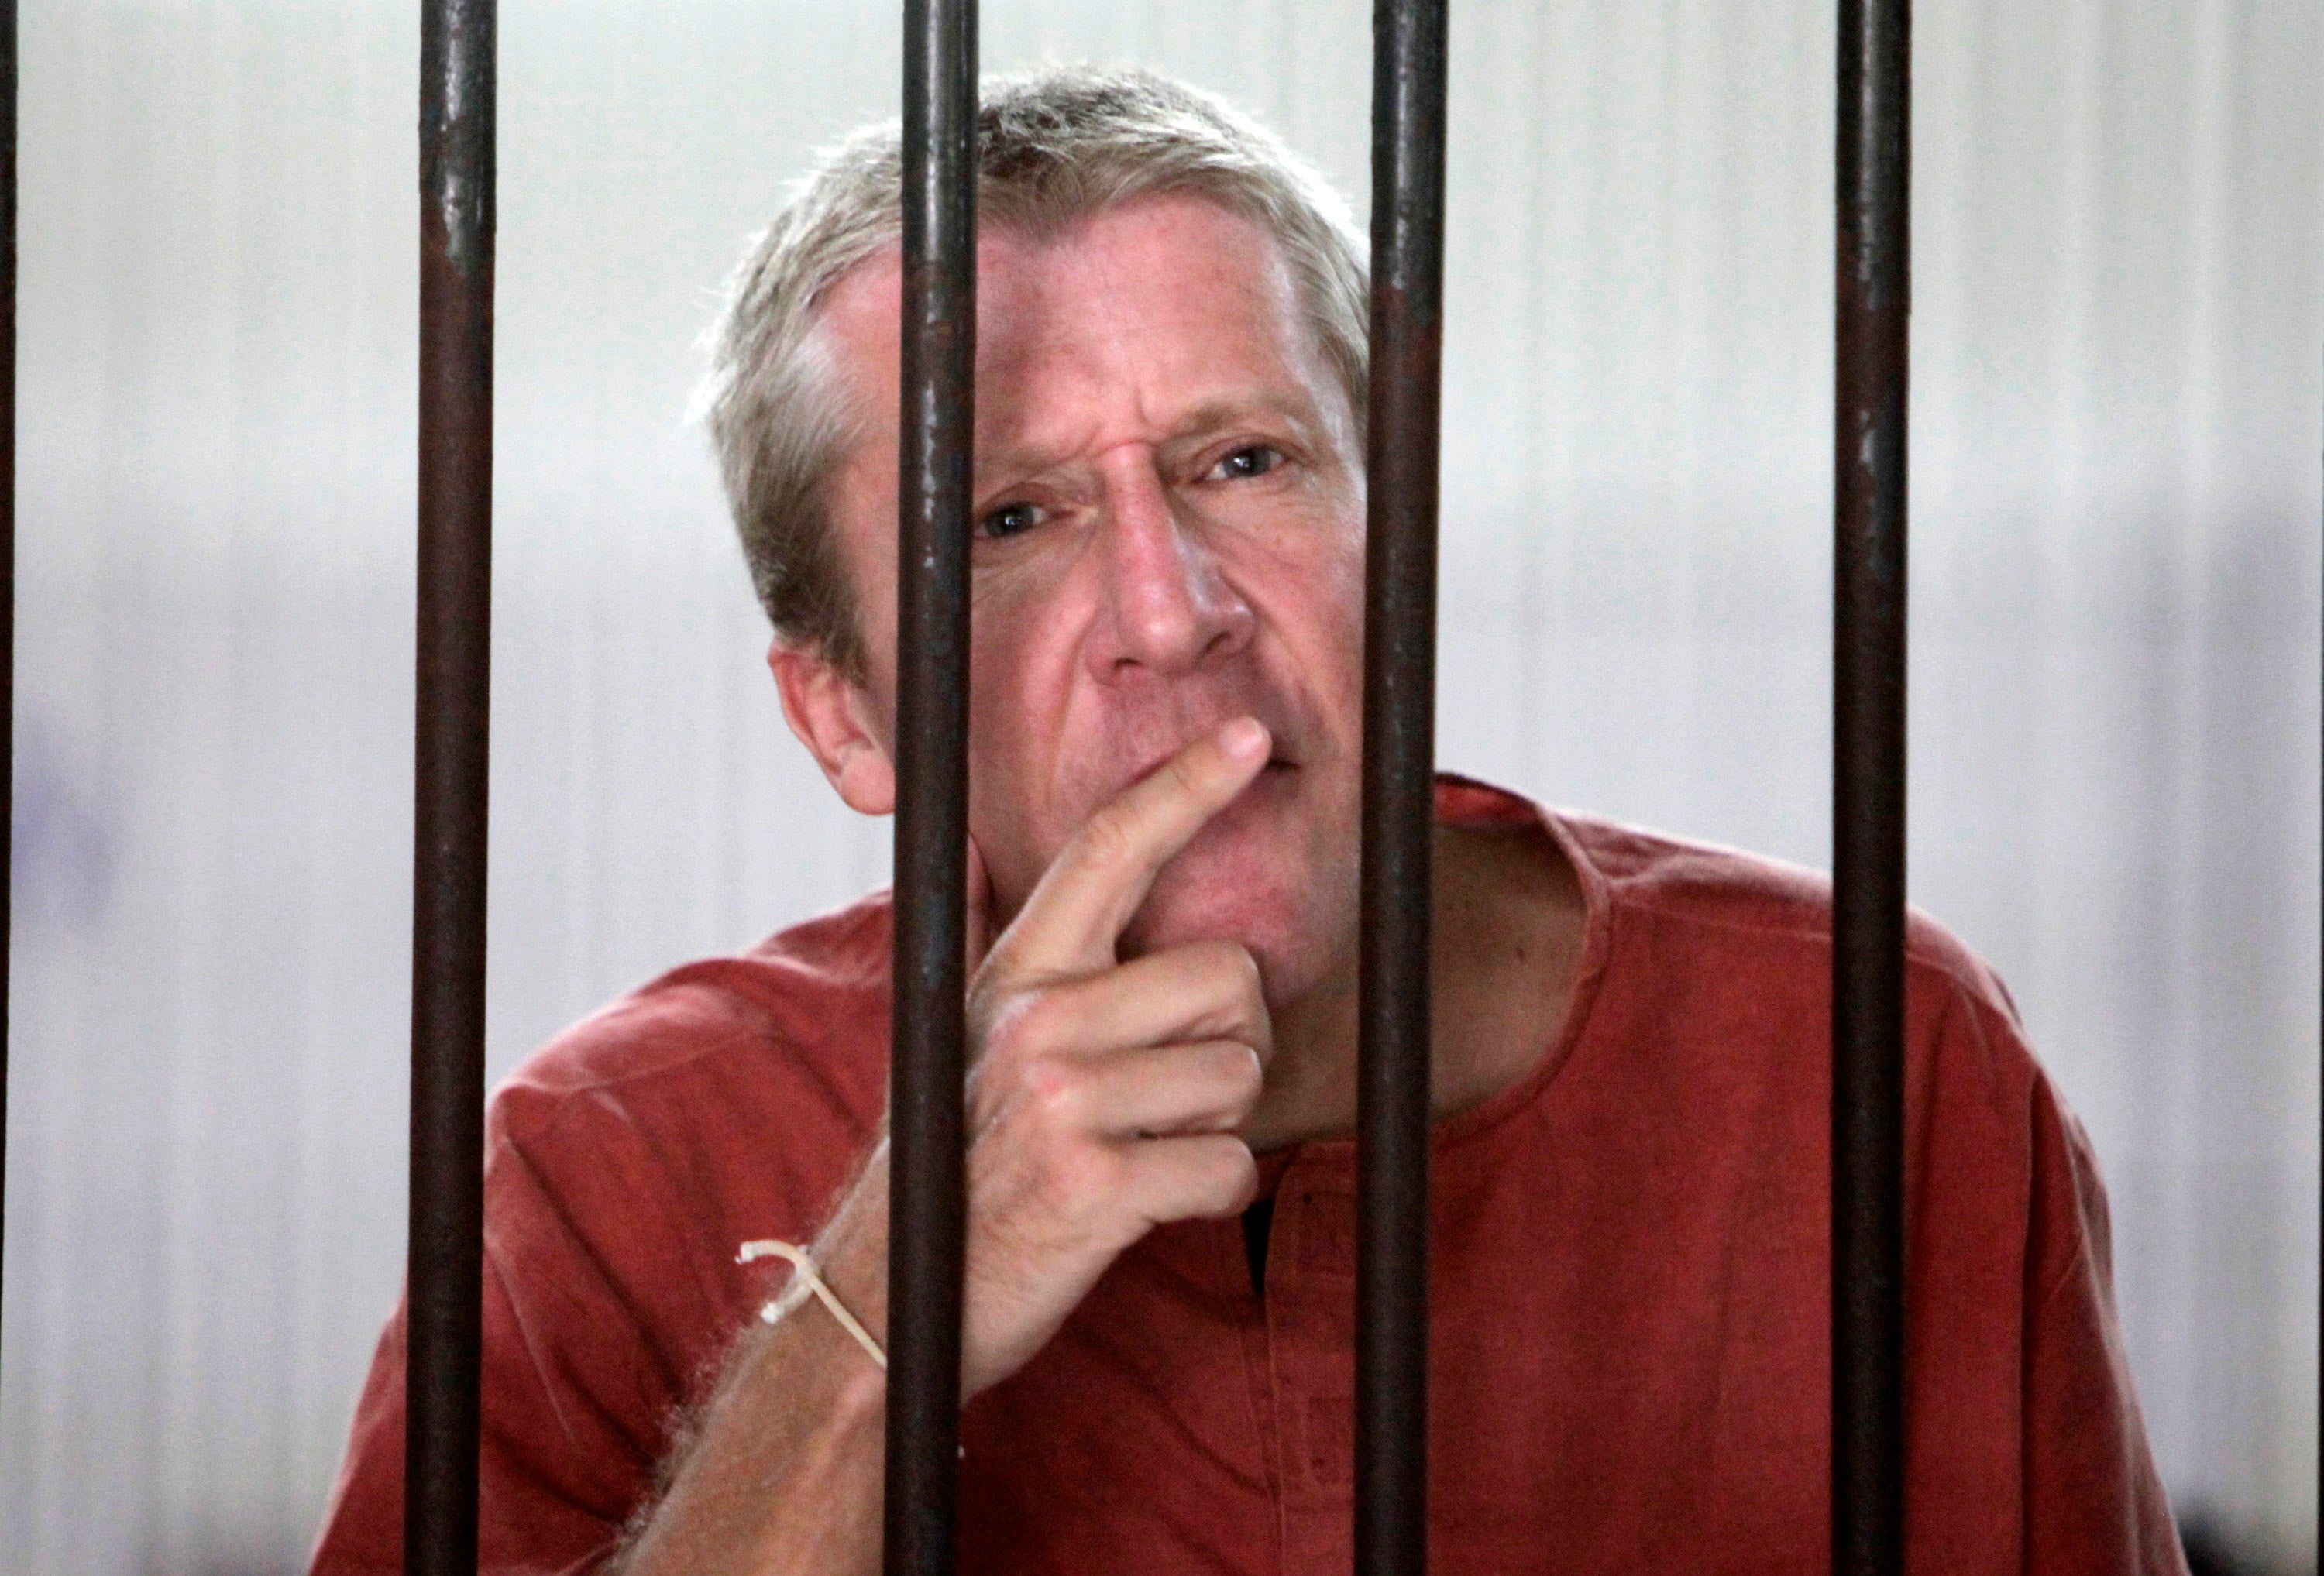 البريطاني مايكل براين سميث يتحدث إلى مراسلين من غرفة احتجازه في المحكمة الجنائية في بانكوك يوم الخميس في 18 فبراير/شباط 2010.